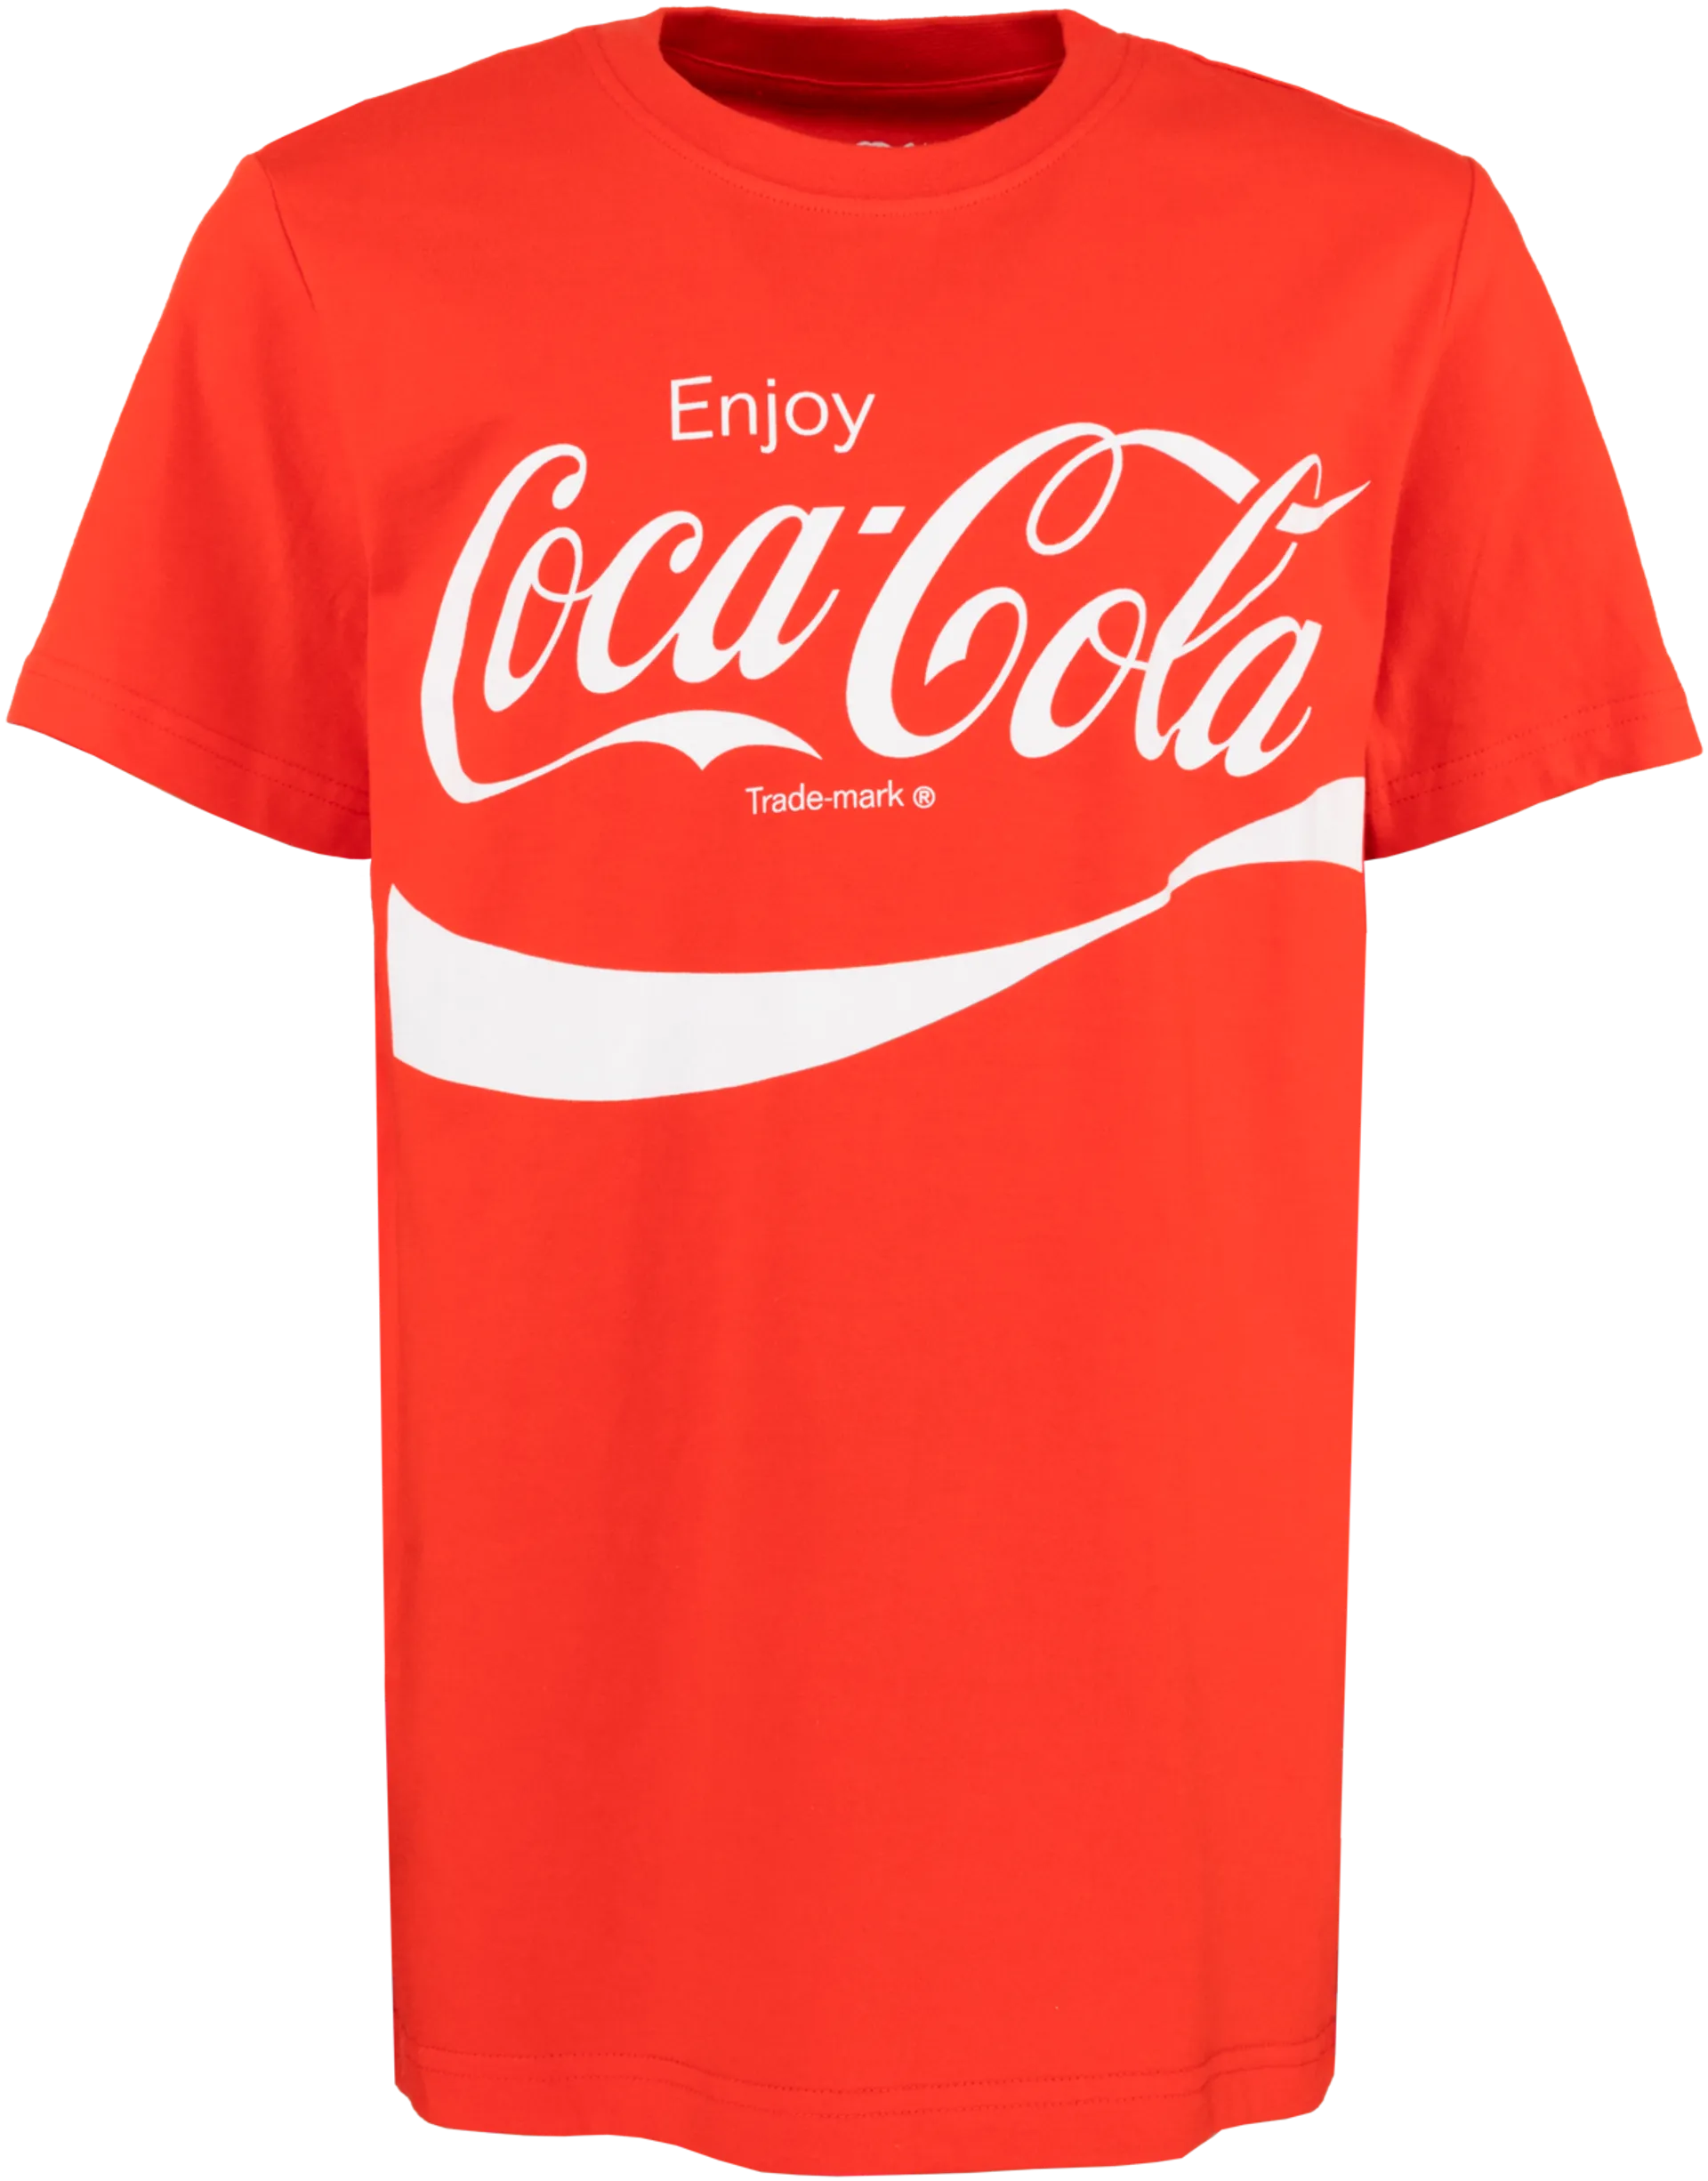 Coca-Cola nuorten T-paita CO10609 - RED - 1